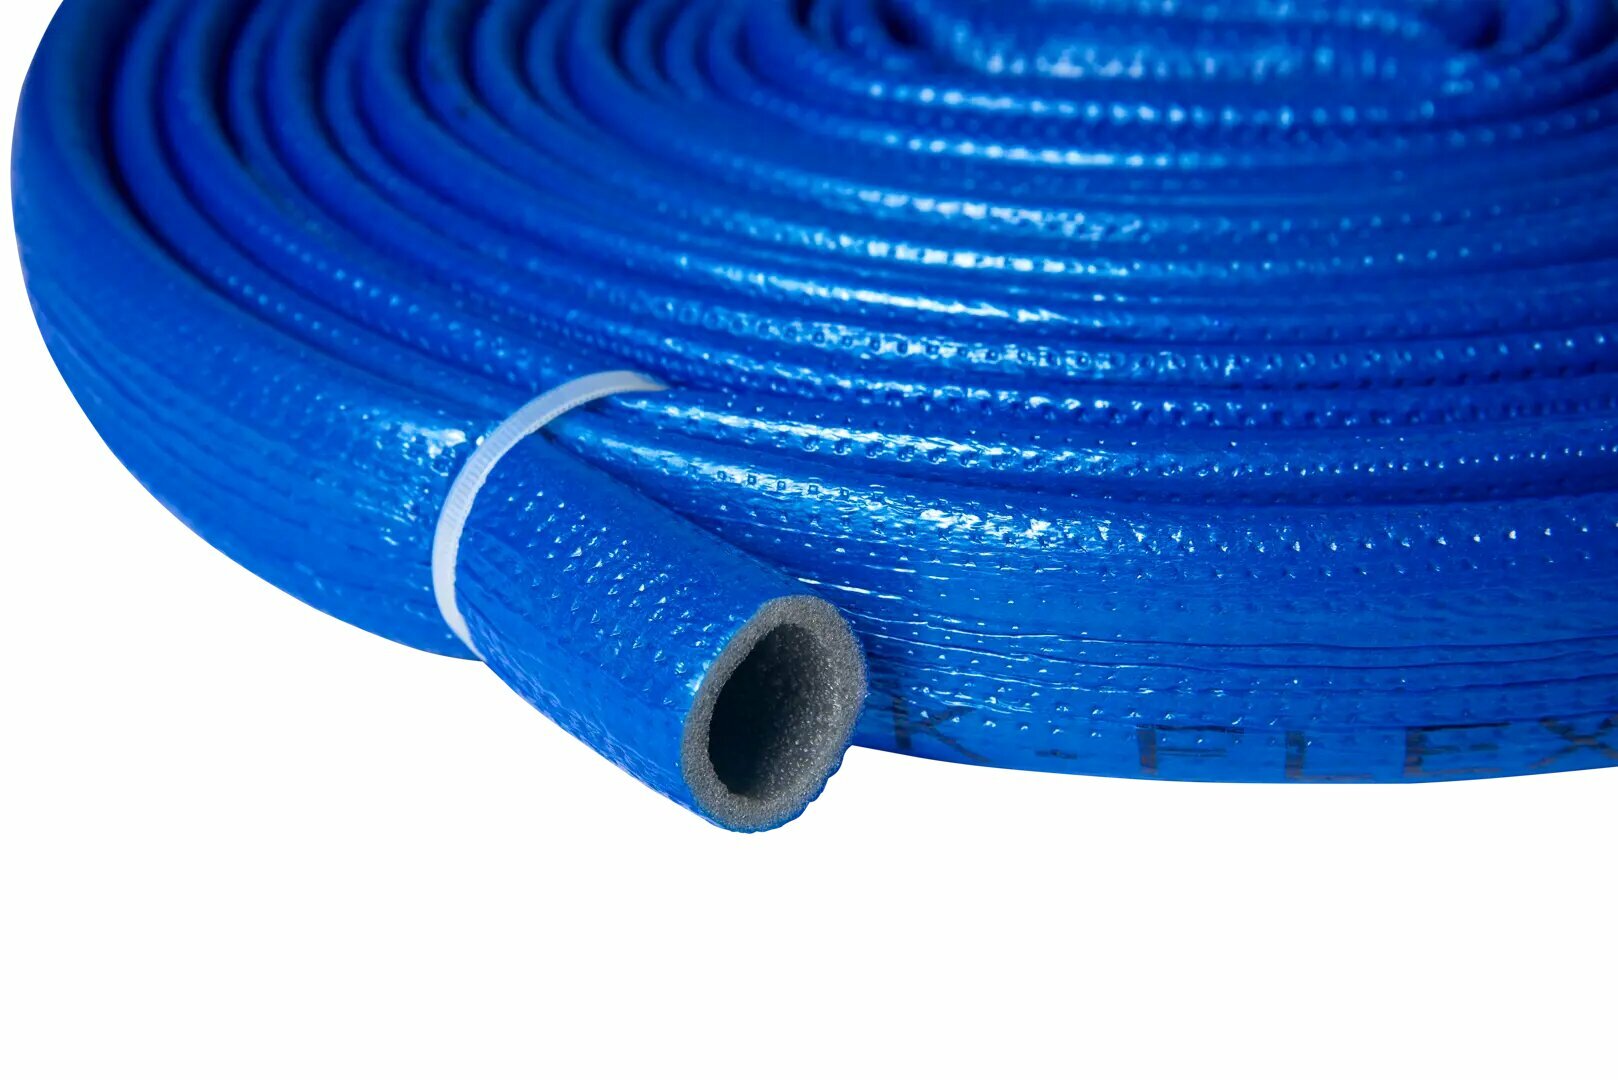 Изоляция для труб K-Flex Compact 18 мм 200 см каучук цвет синий